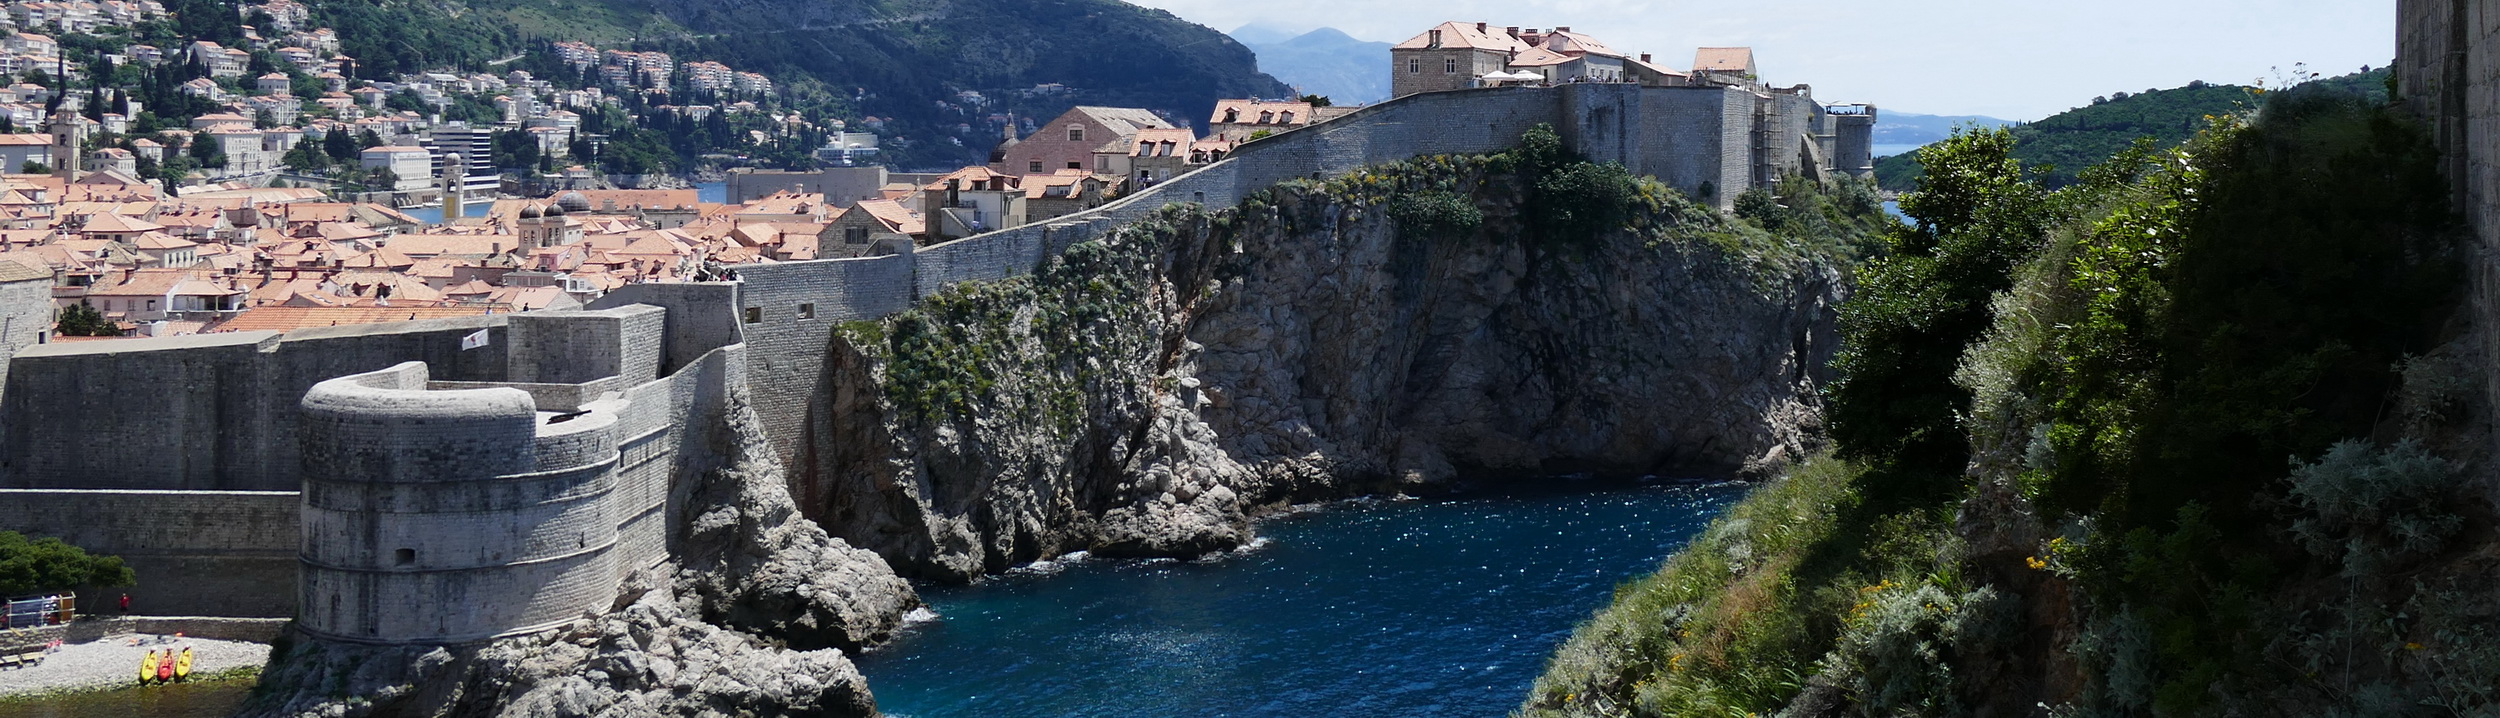 Kroatien Urlaub 2016 - Dubrovnik, die Perle der Adria